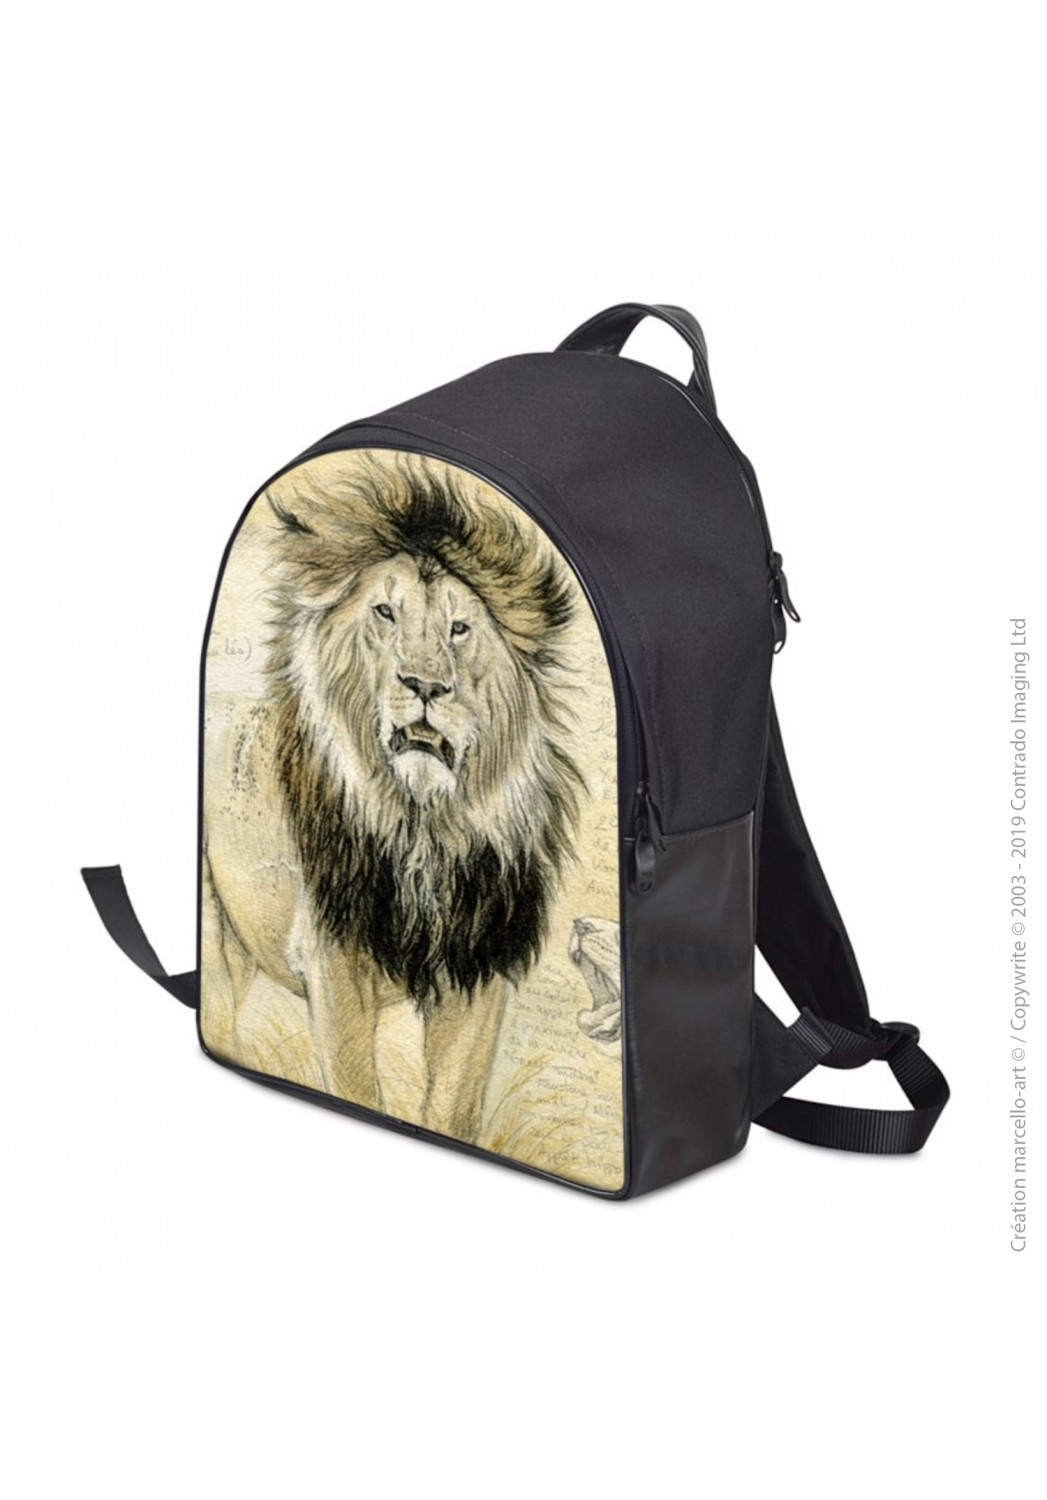 Marcello-art: Fashion accessory Backpack 4 lion Tanzania